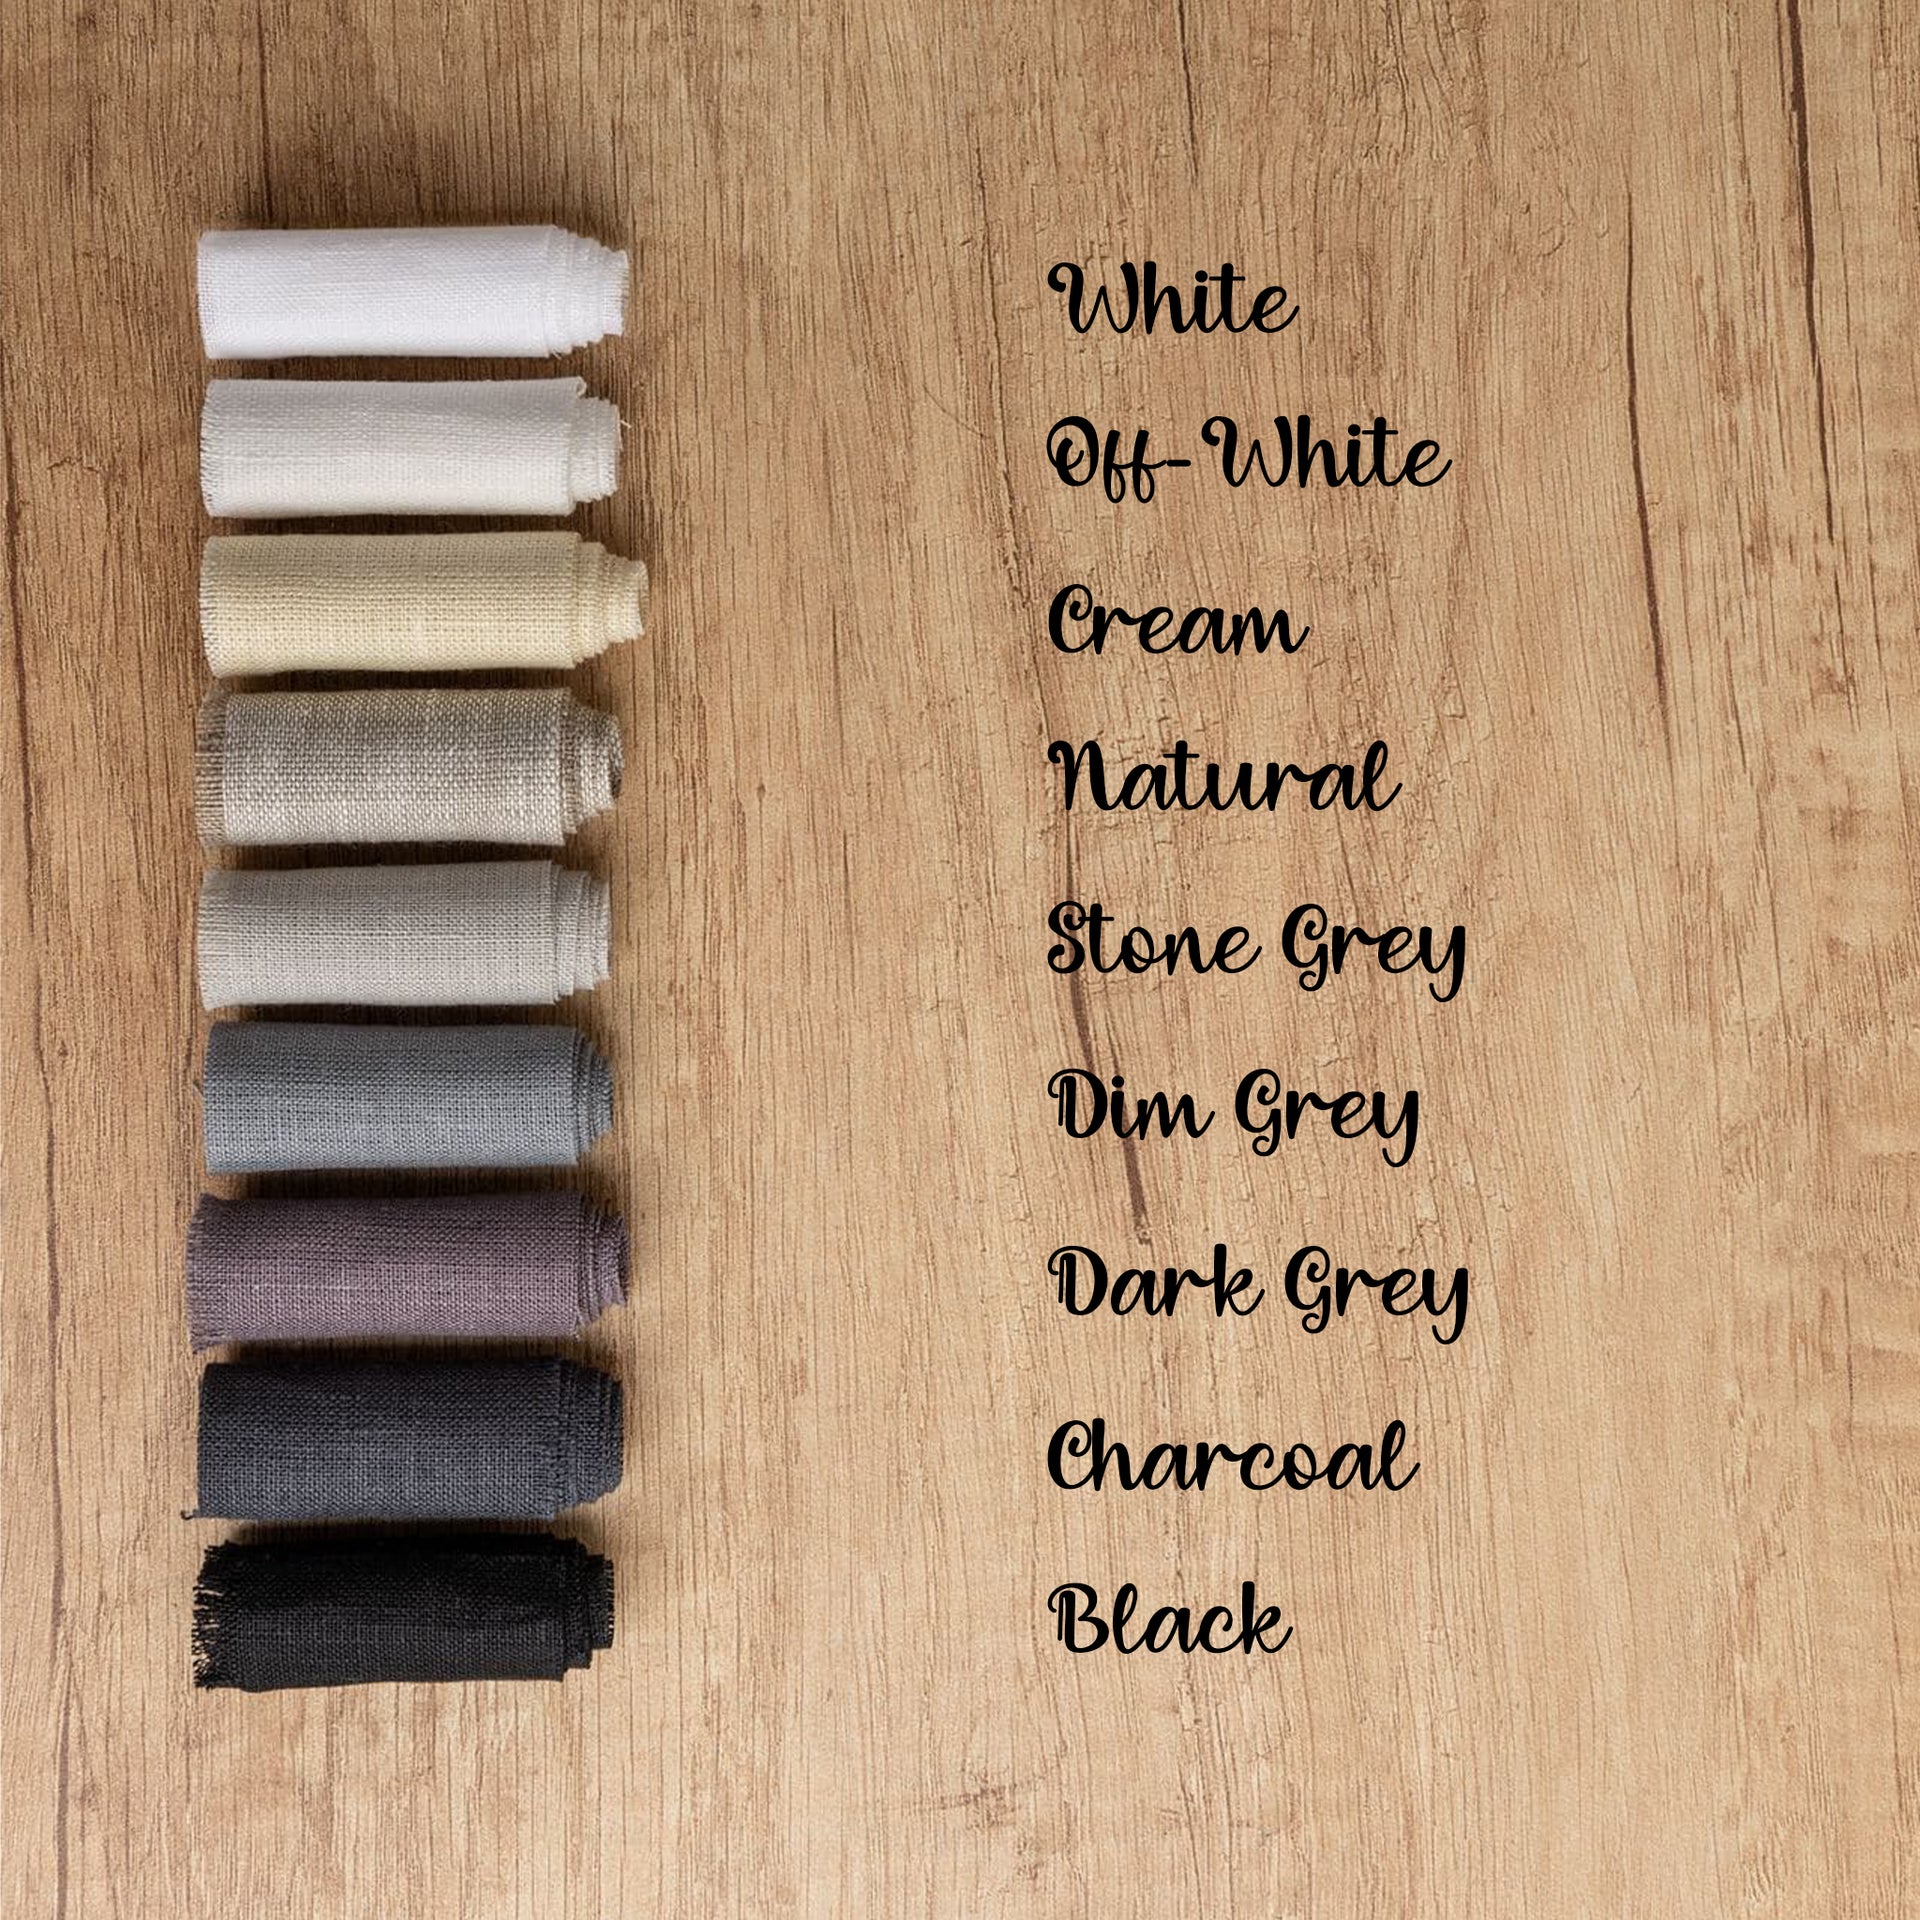 @@color:Stone Grey, color:Dim Grey, color:Black, color:Dark Grey, color:White, color:Off-White, color: Cream, color:Natural, color:Dark Grey, color:Charcoal